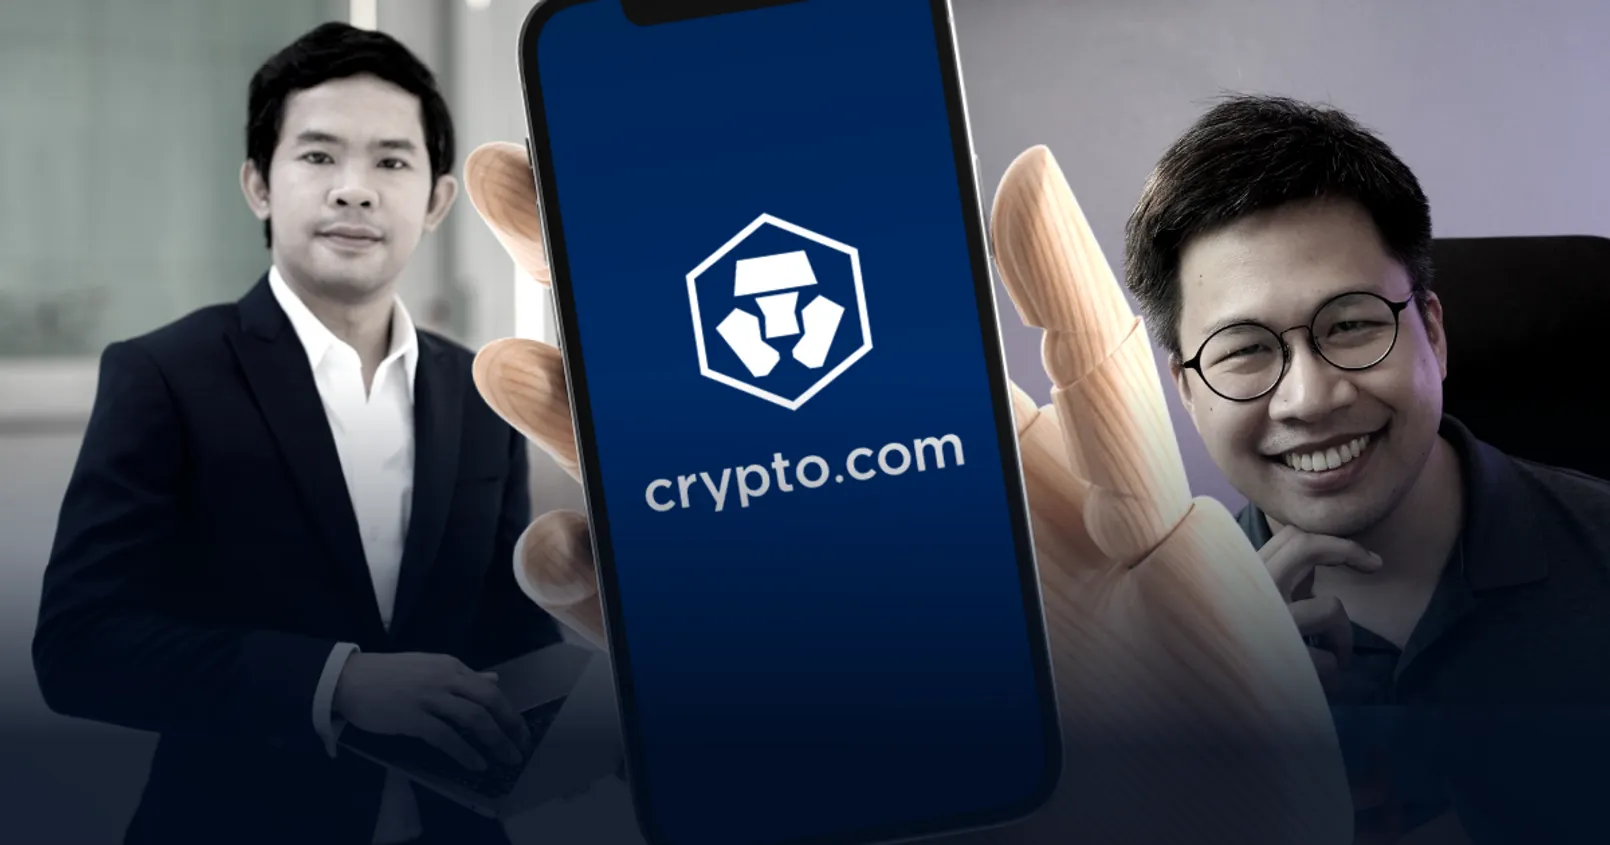 crypto.com โอนเงินผิด ปรมินทร์ พิริยะ